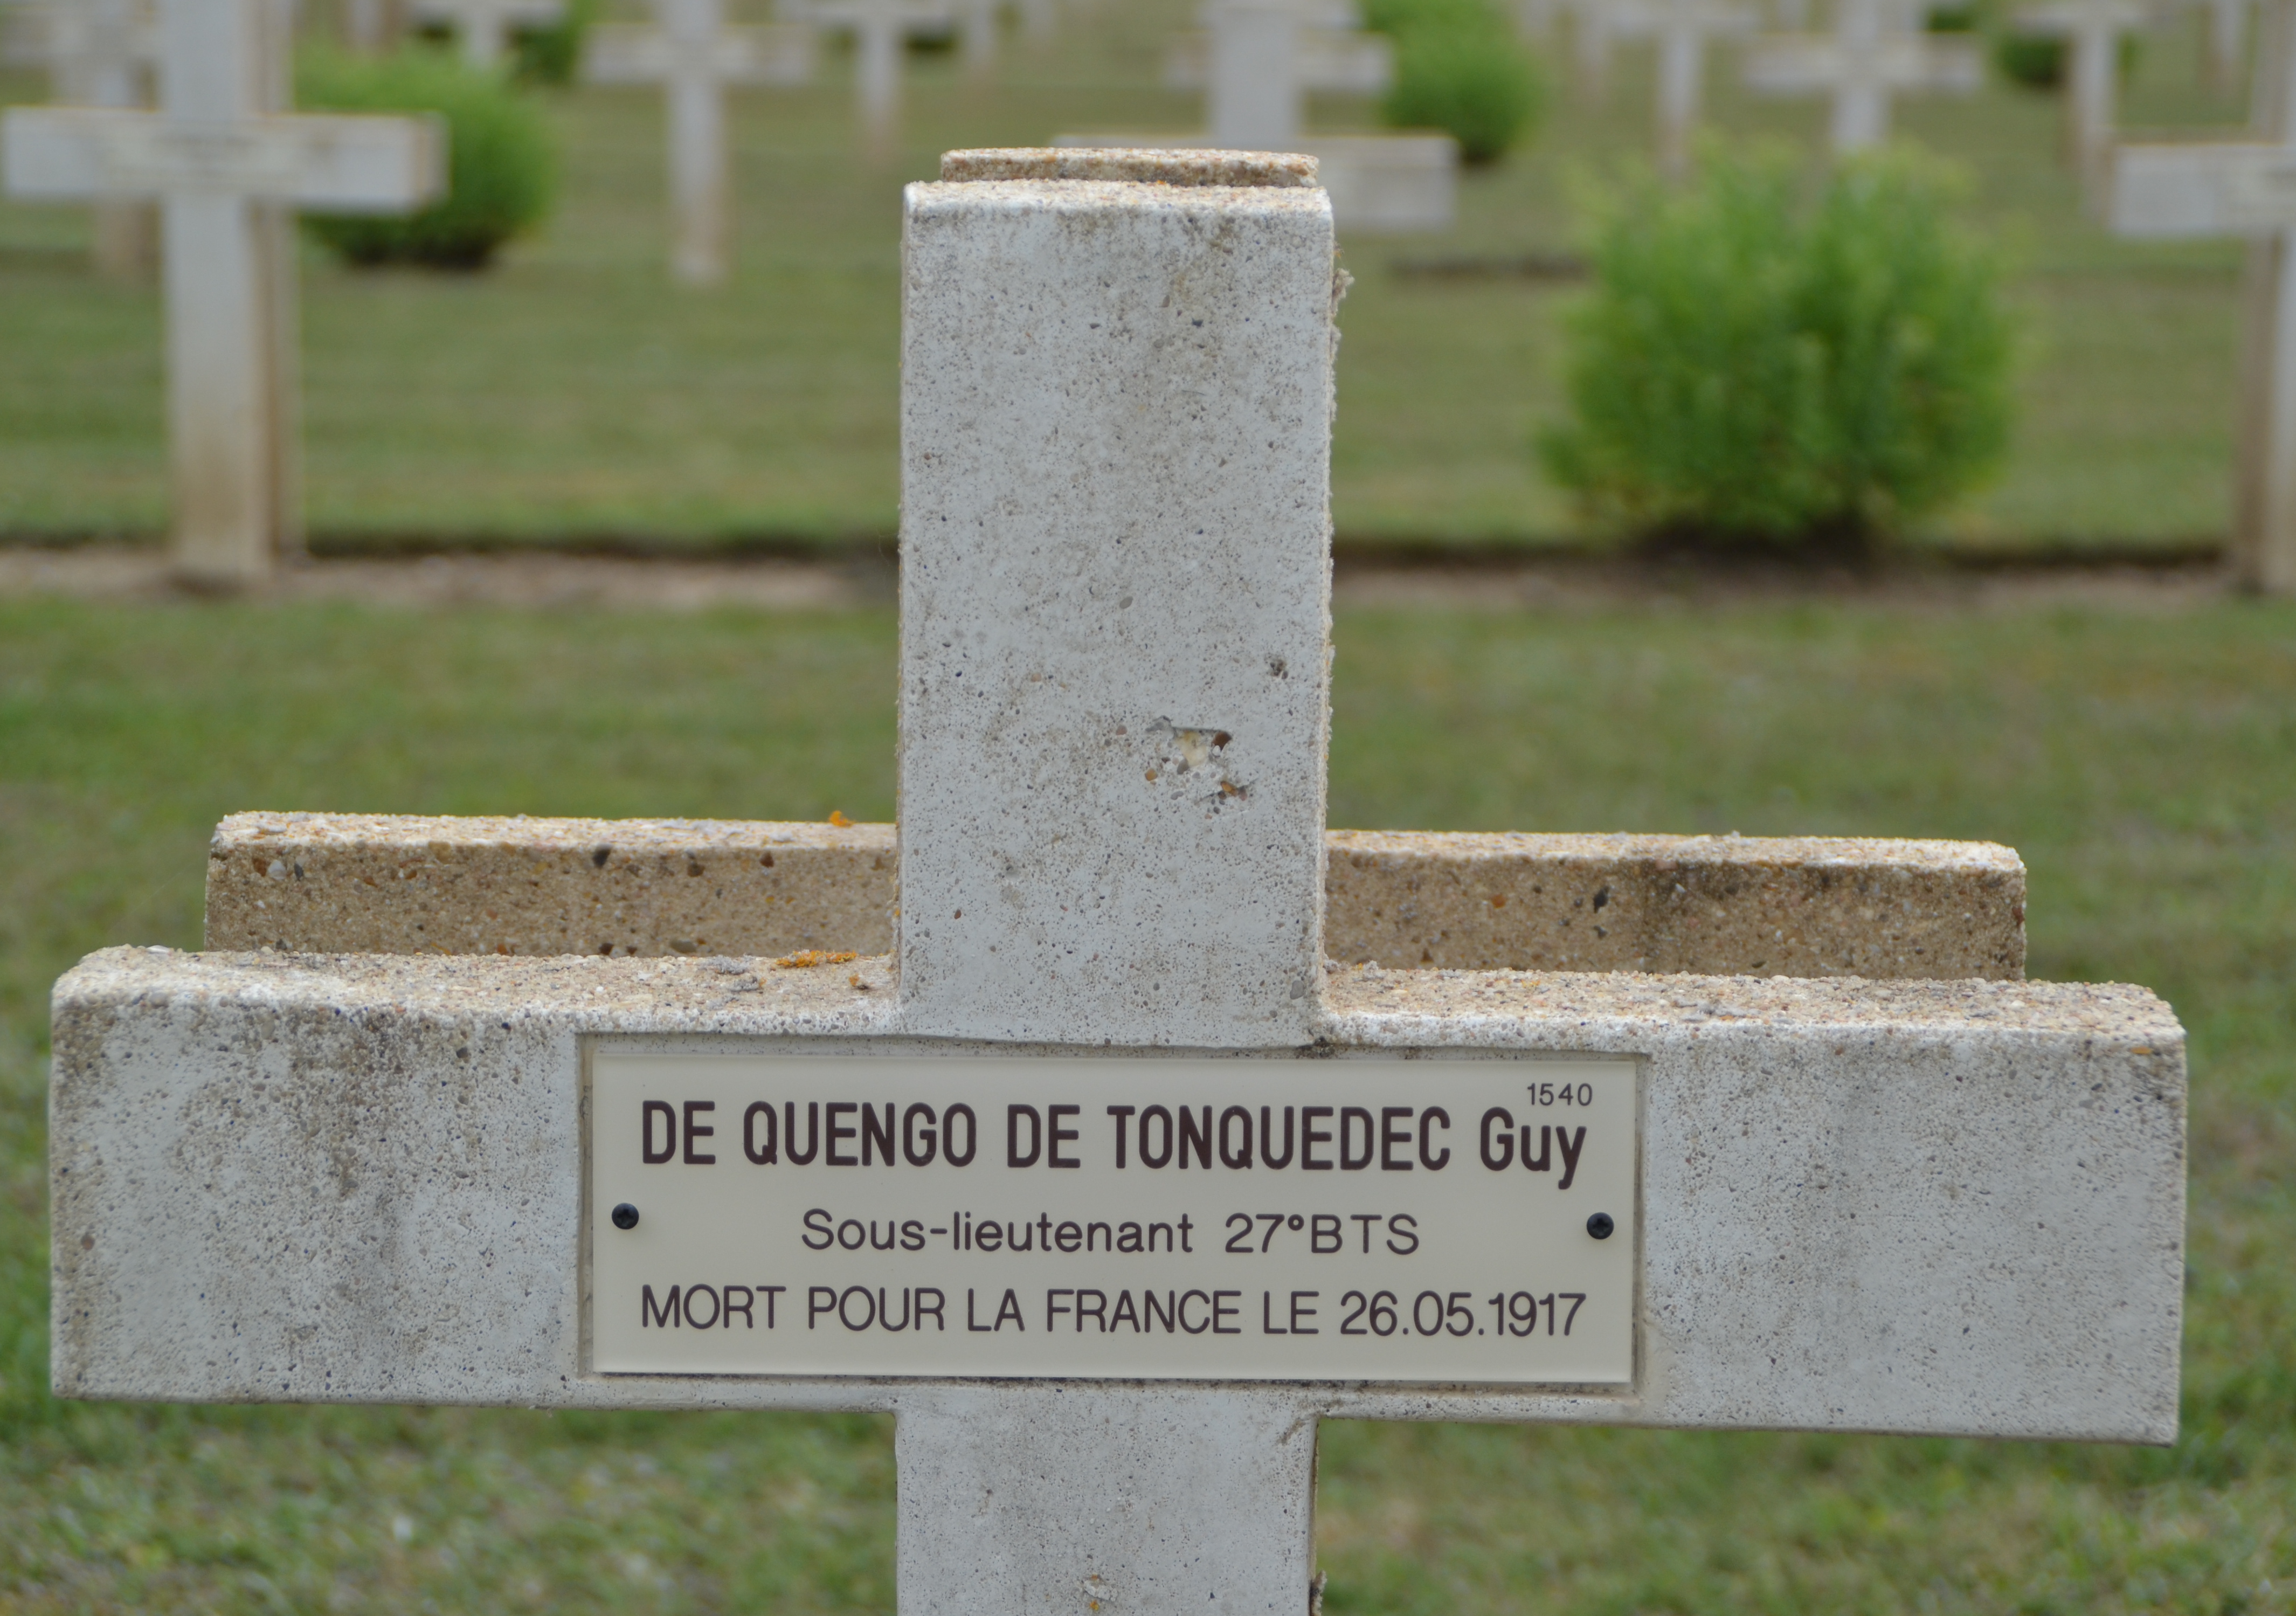 De Quengo de Tonguedec Guy Joachim Marie sépulture à Soupir 1 (Aisne)